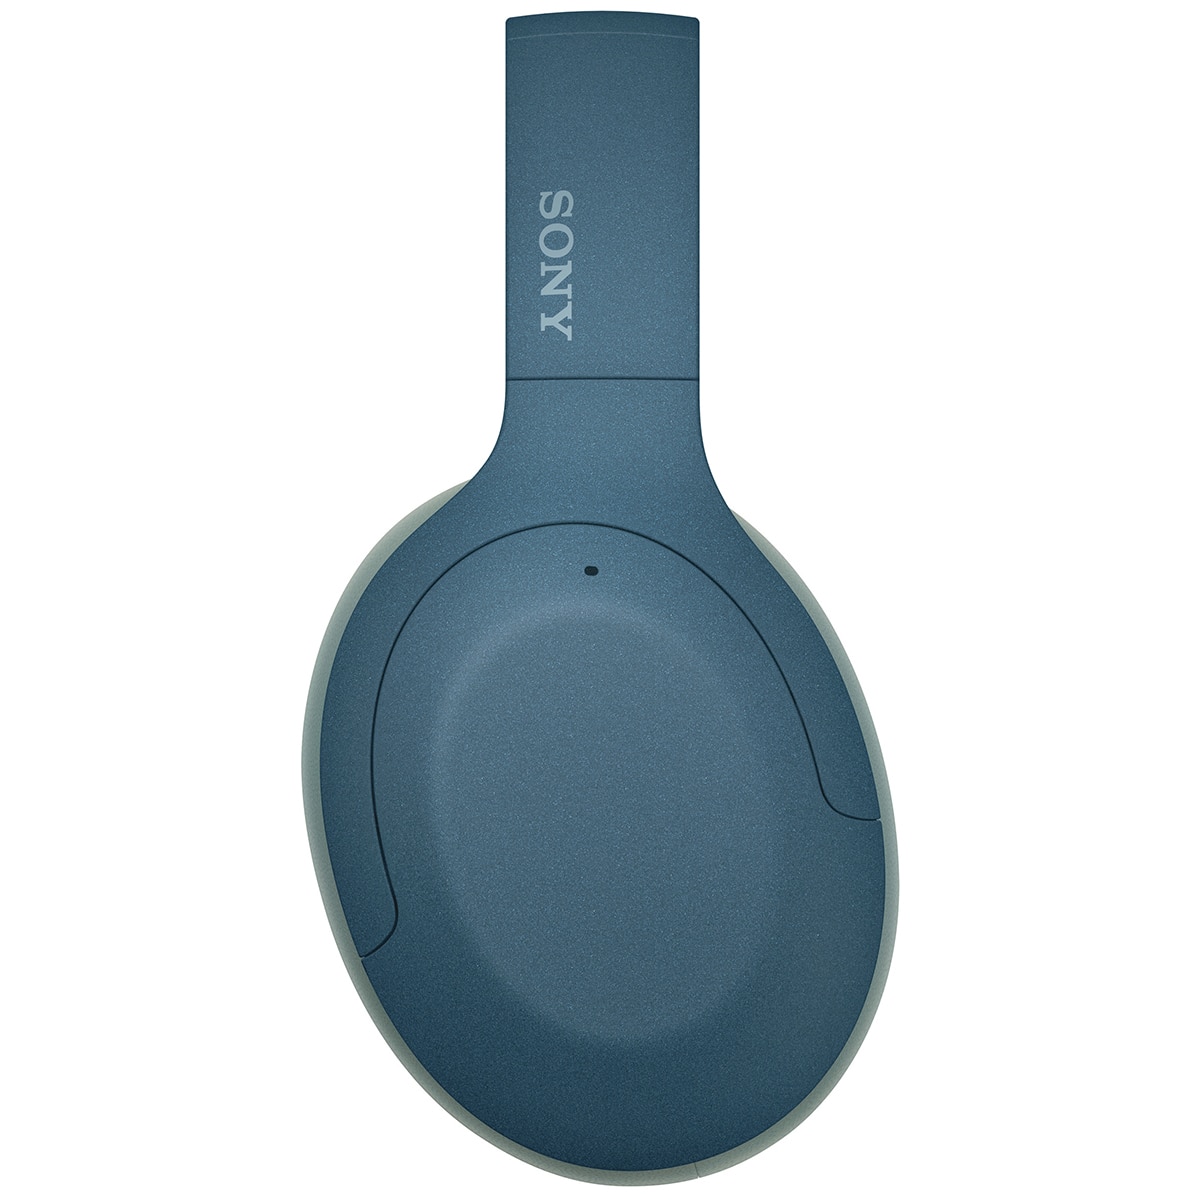 Sony Premium Wireless Noise-cancelling Headphones BLUE